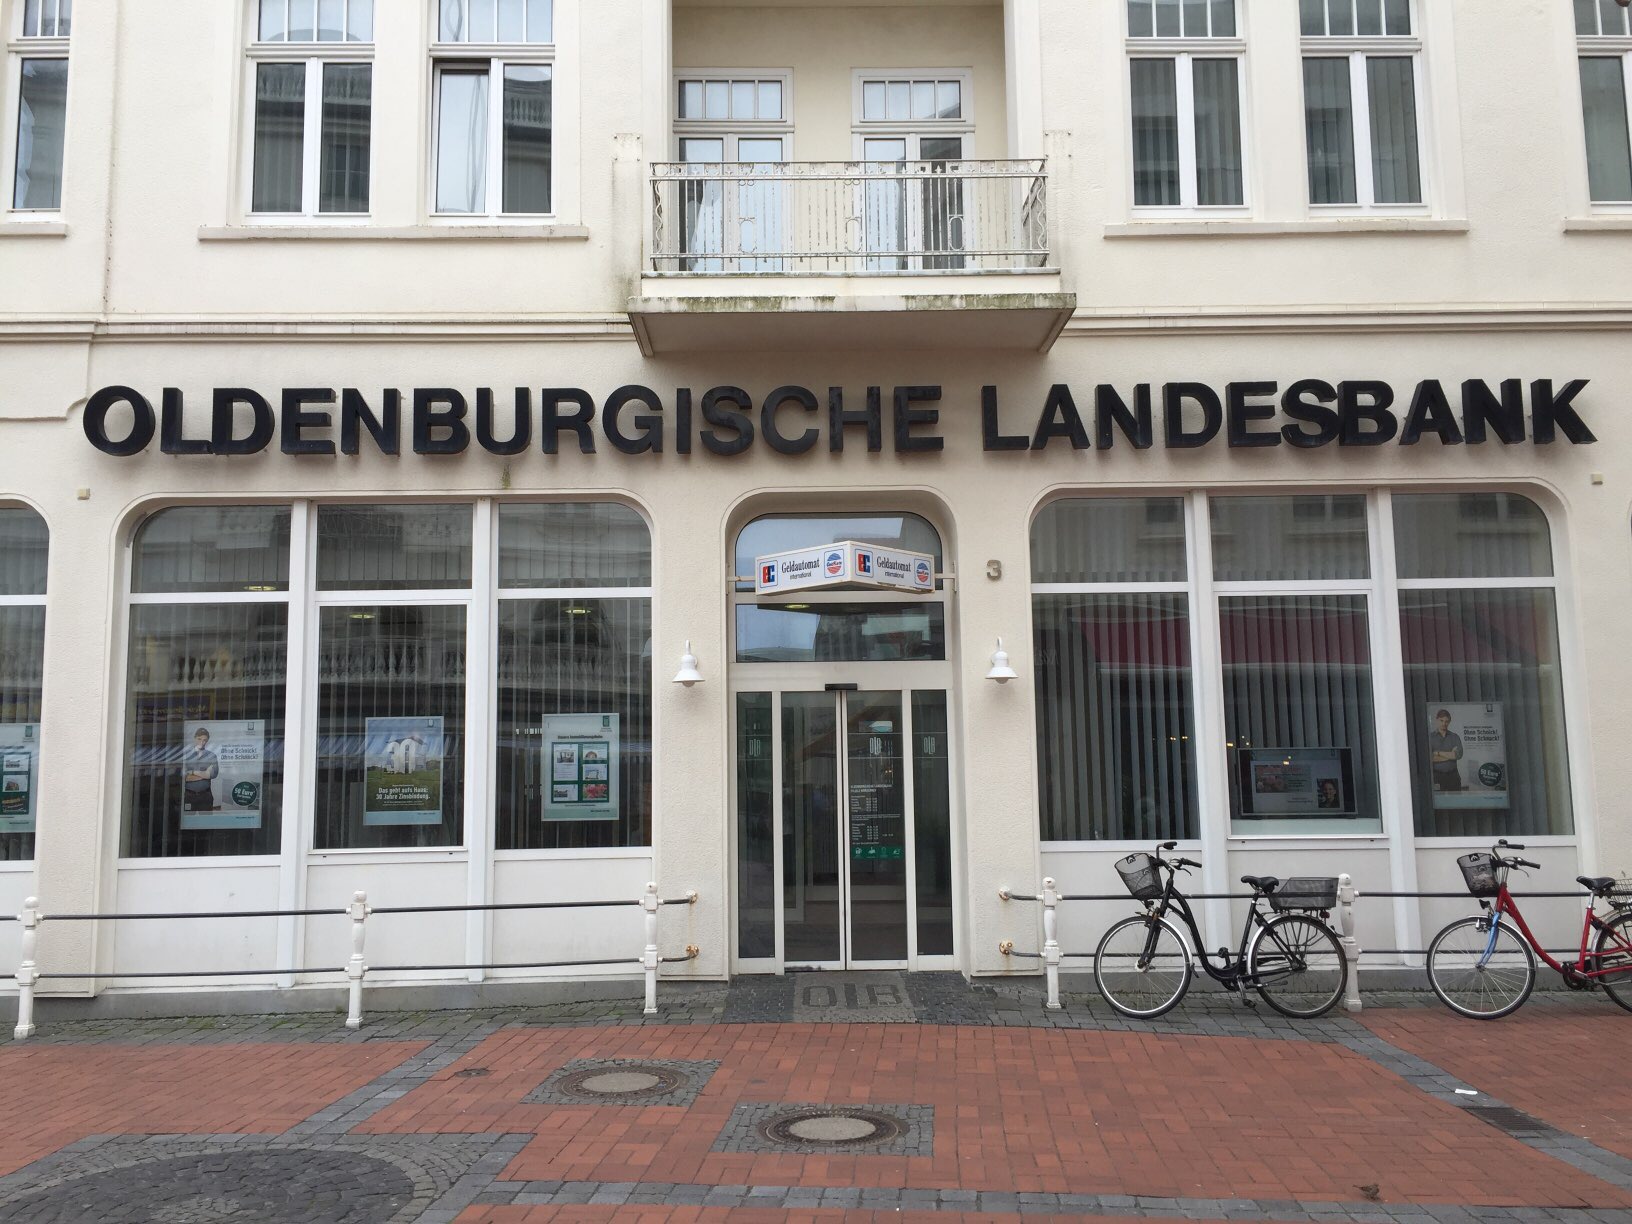 Oldenburgische landesbank bremen